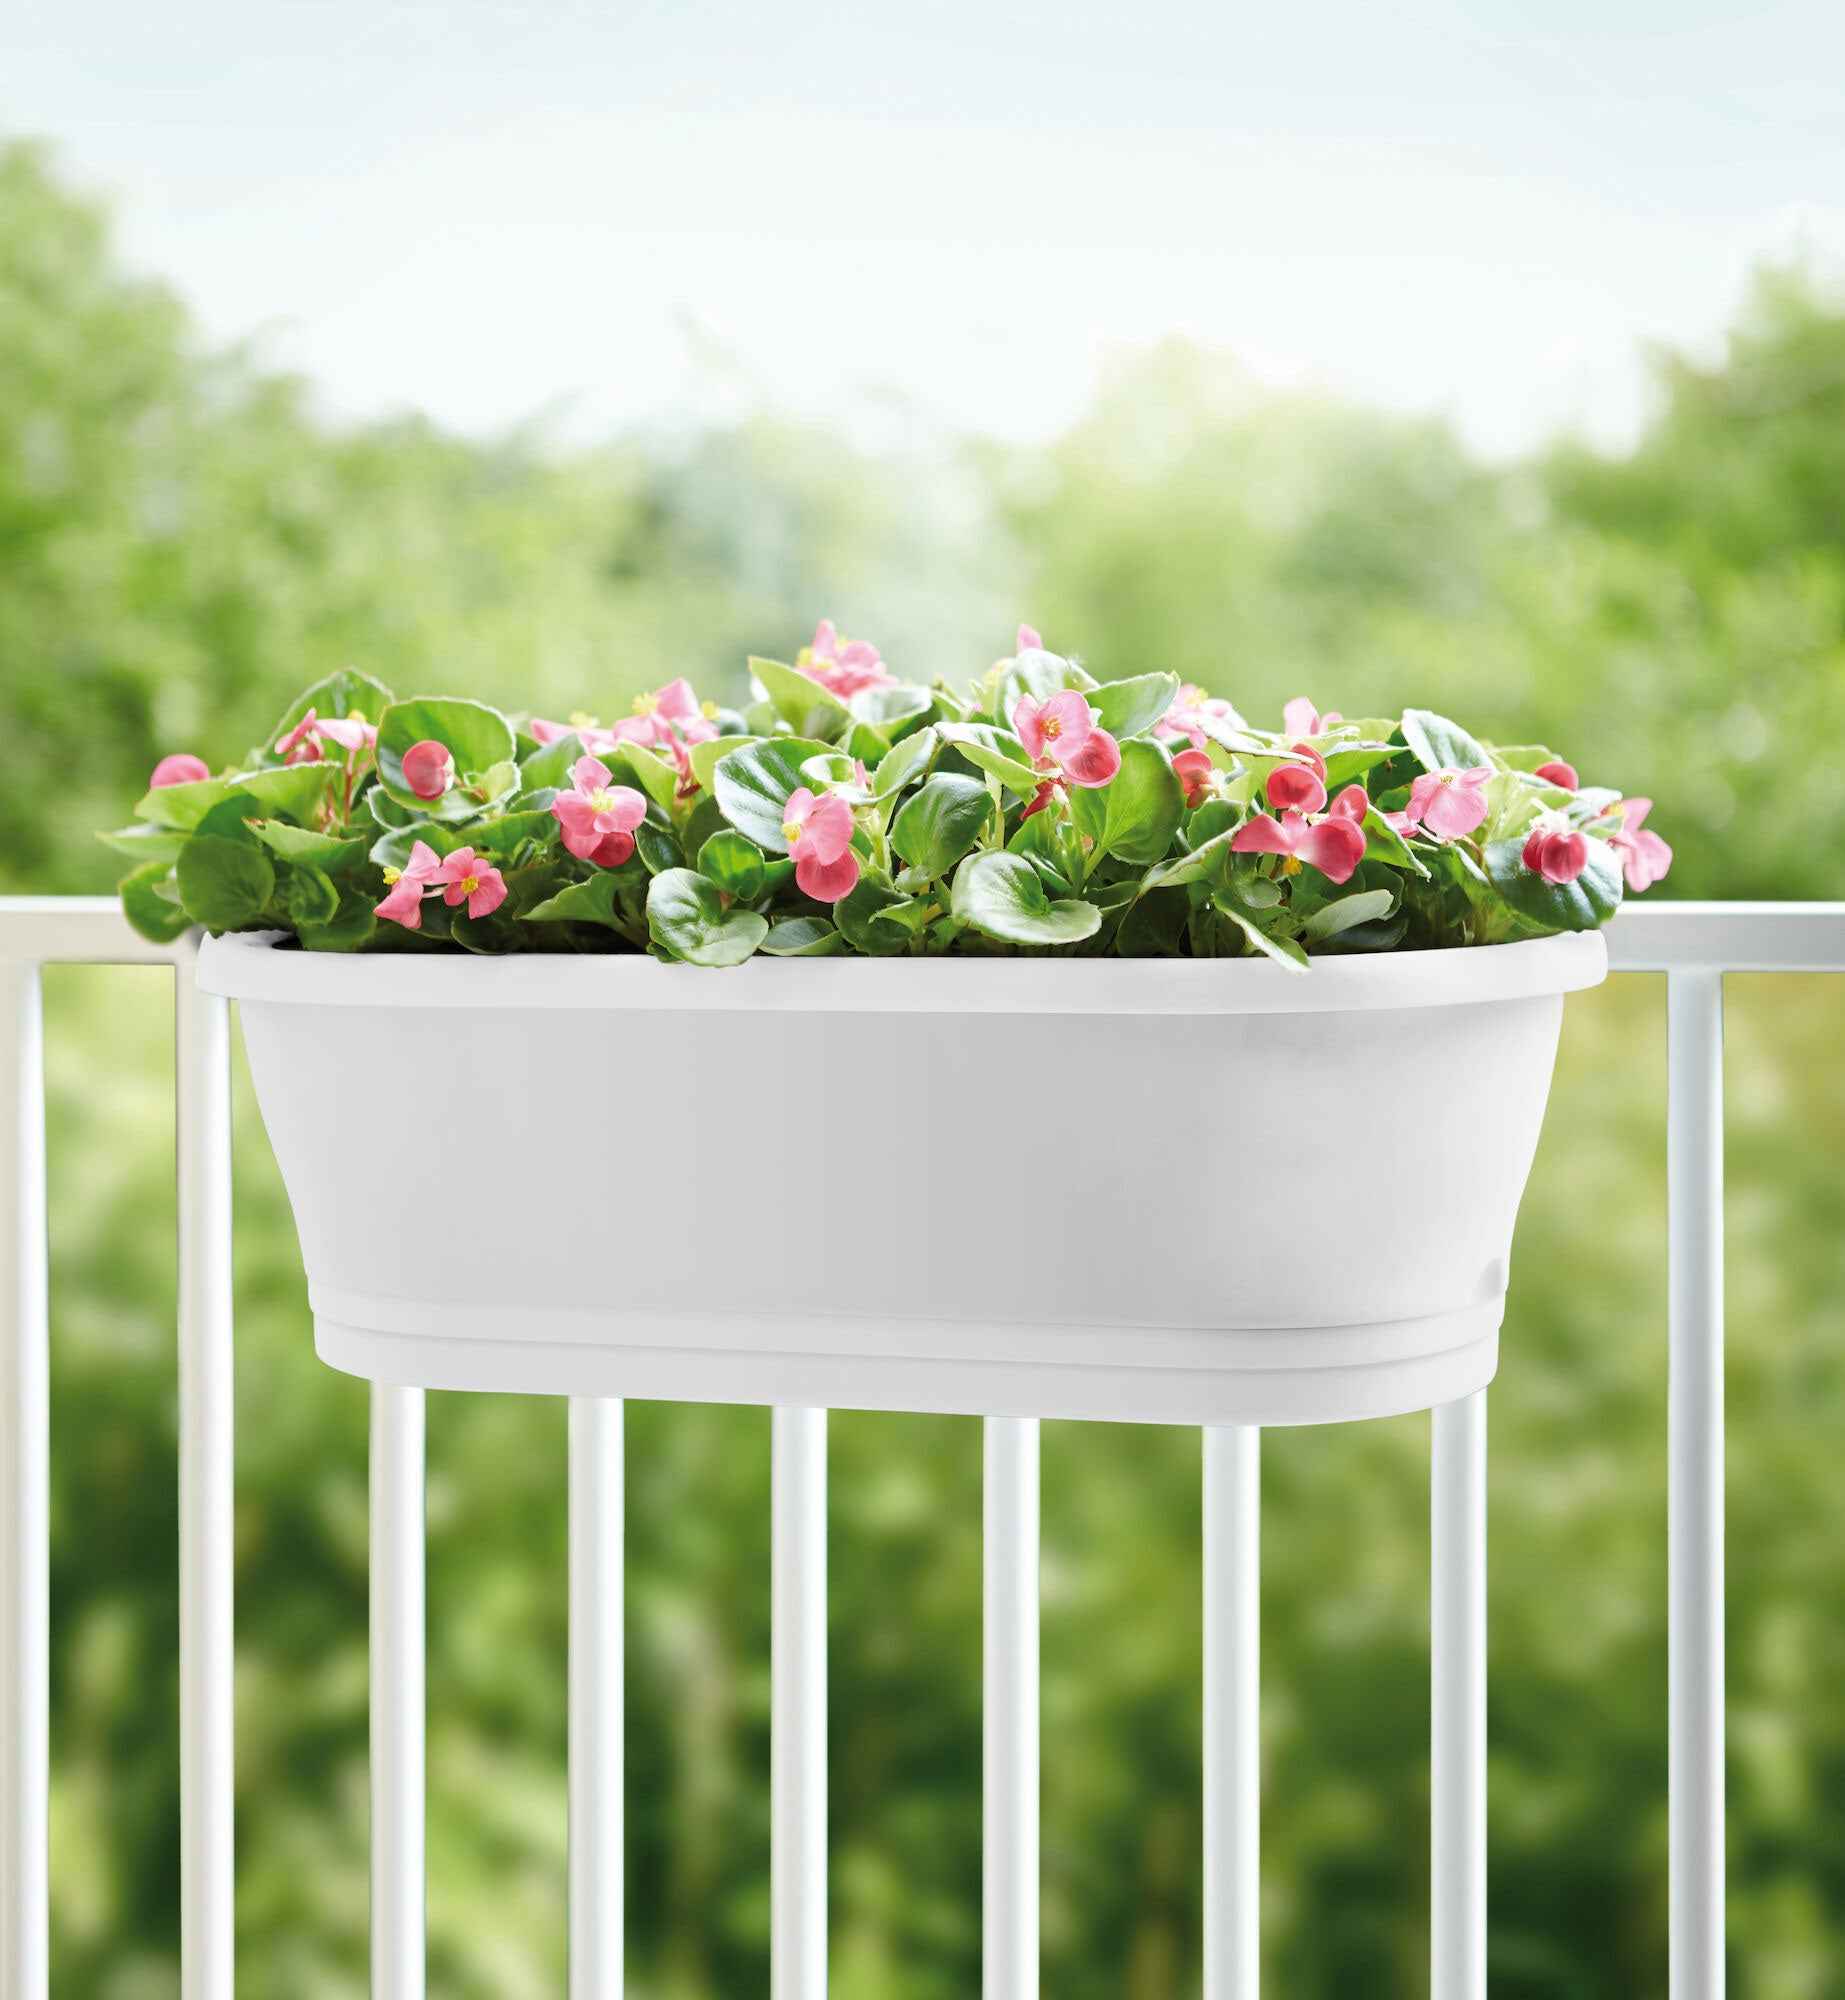 Elho jardinière Corsica easy balcony ovale blanc - Pot pour l'extérieur - Elho